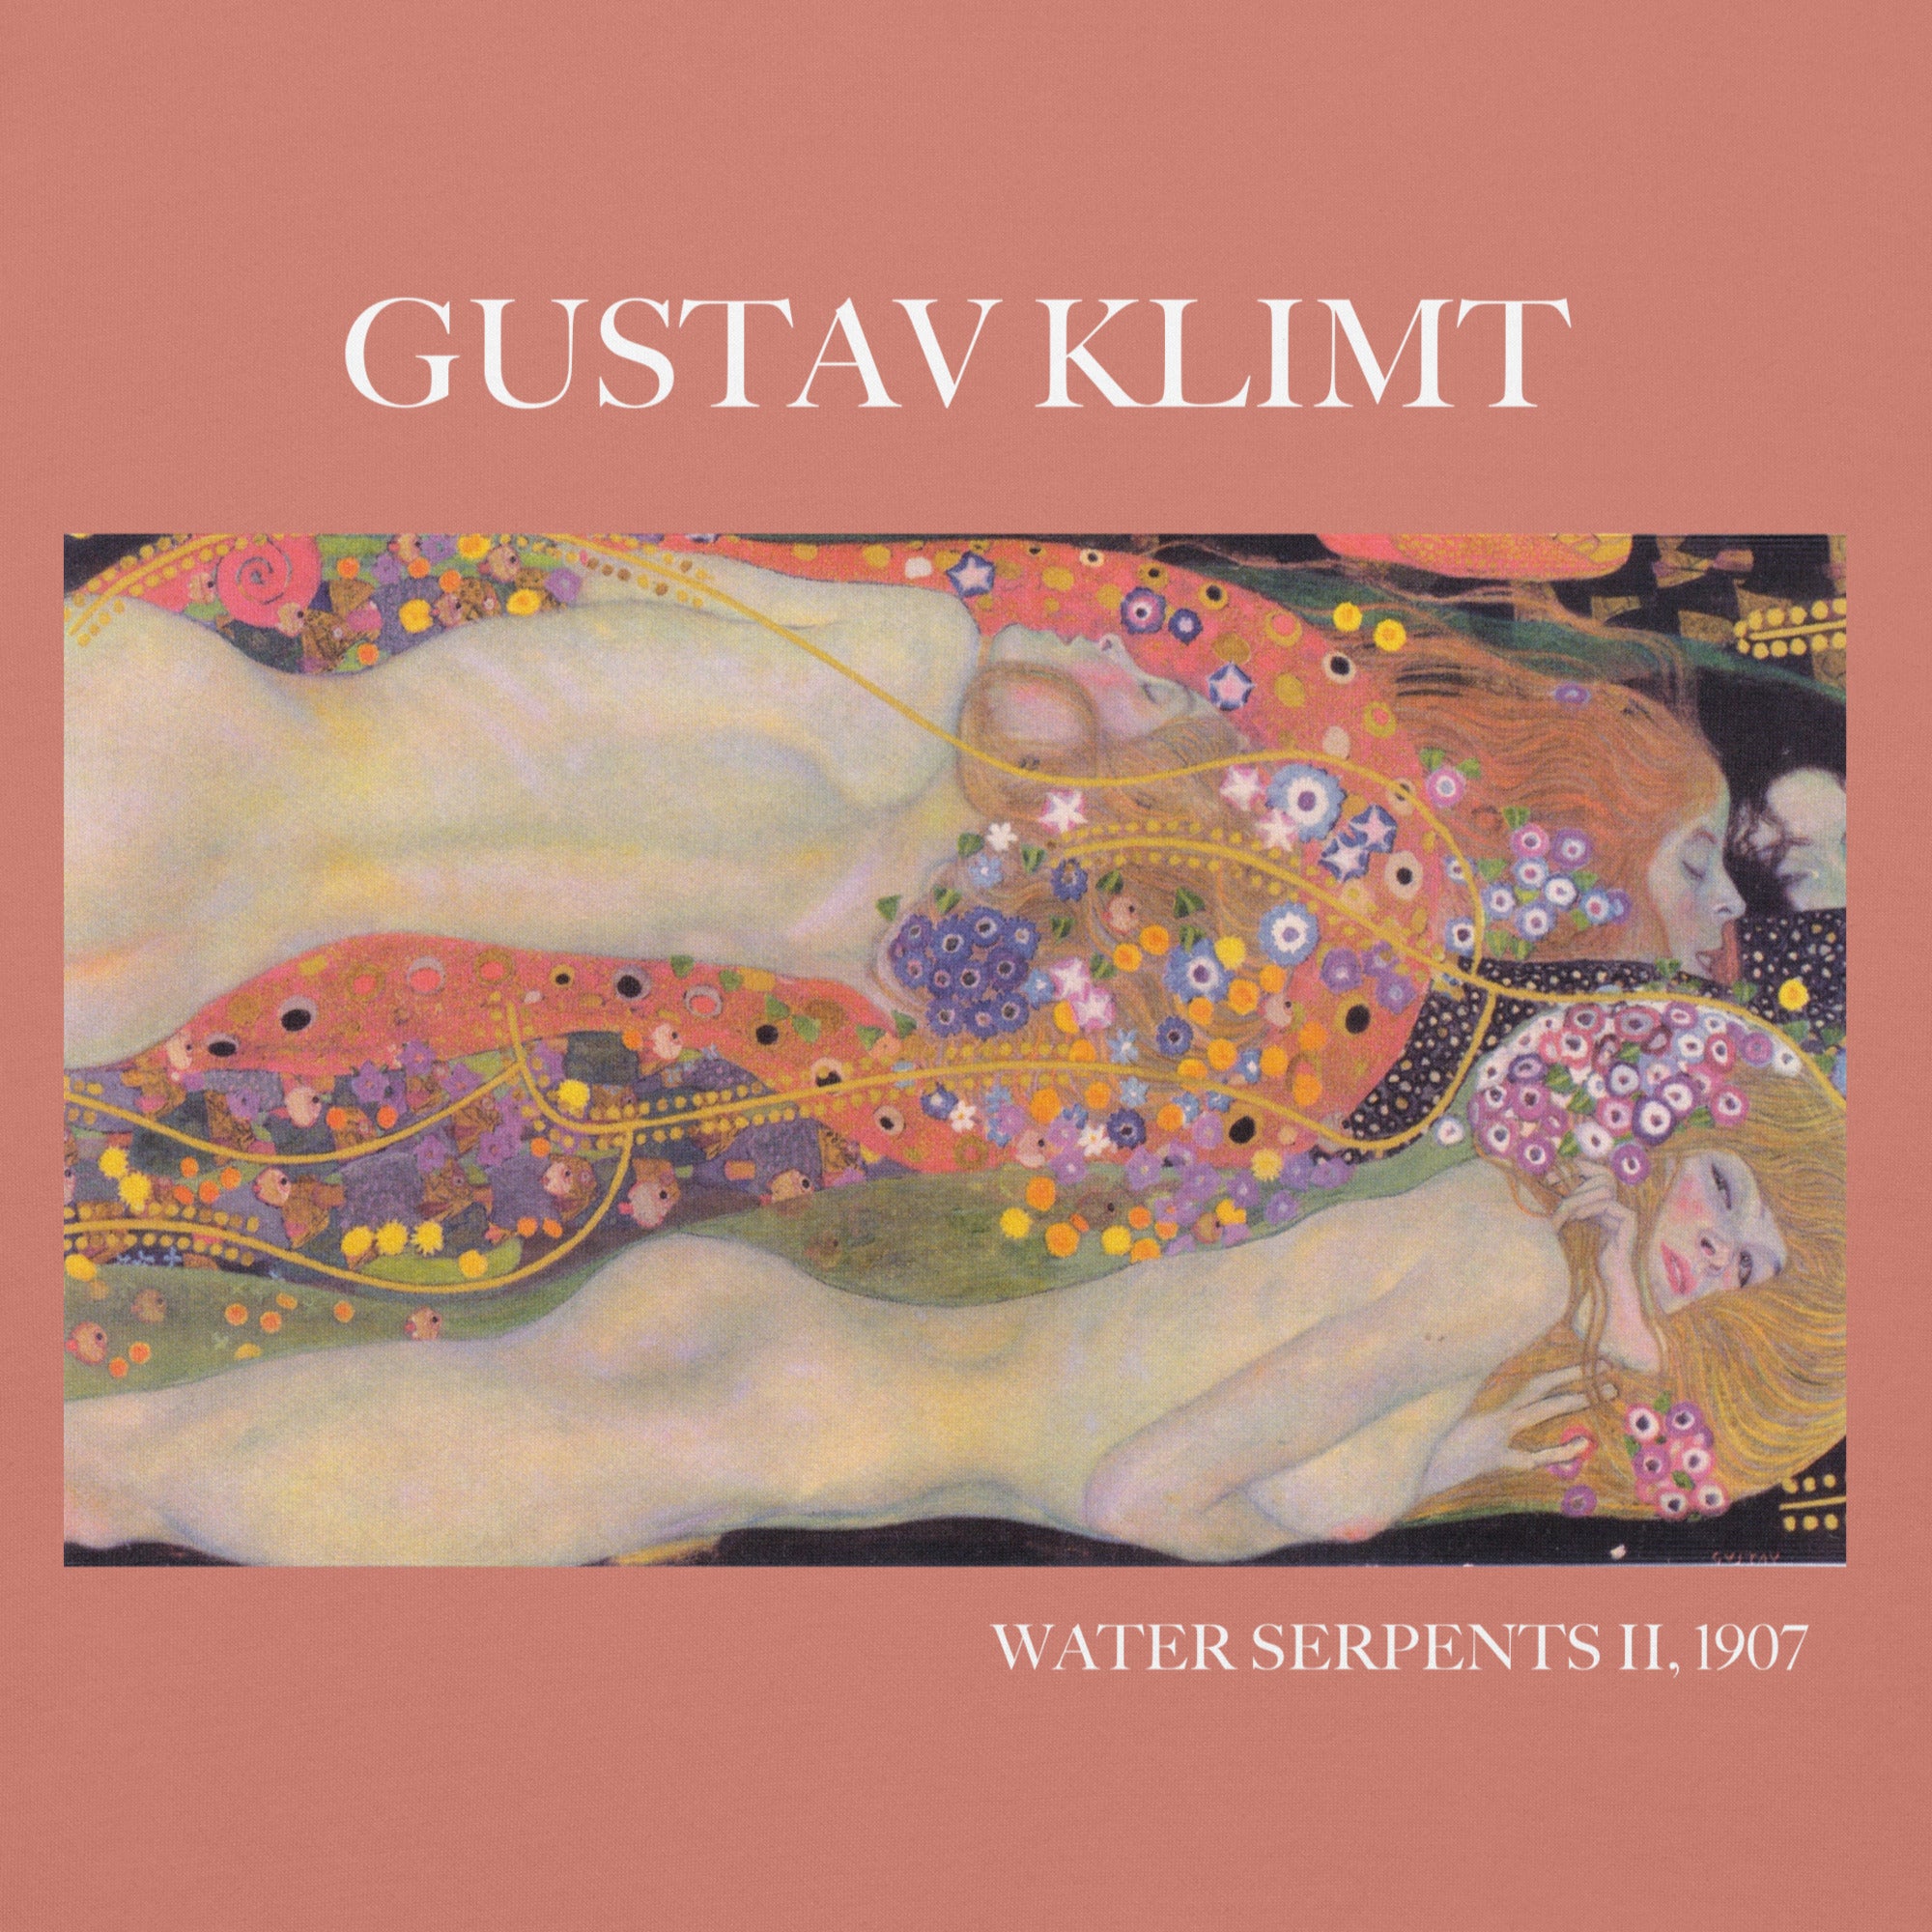 Gustav Klimt 'Water Serpents II' Famous Painting Hoodie | Unisex Premium Art Hoodie